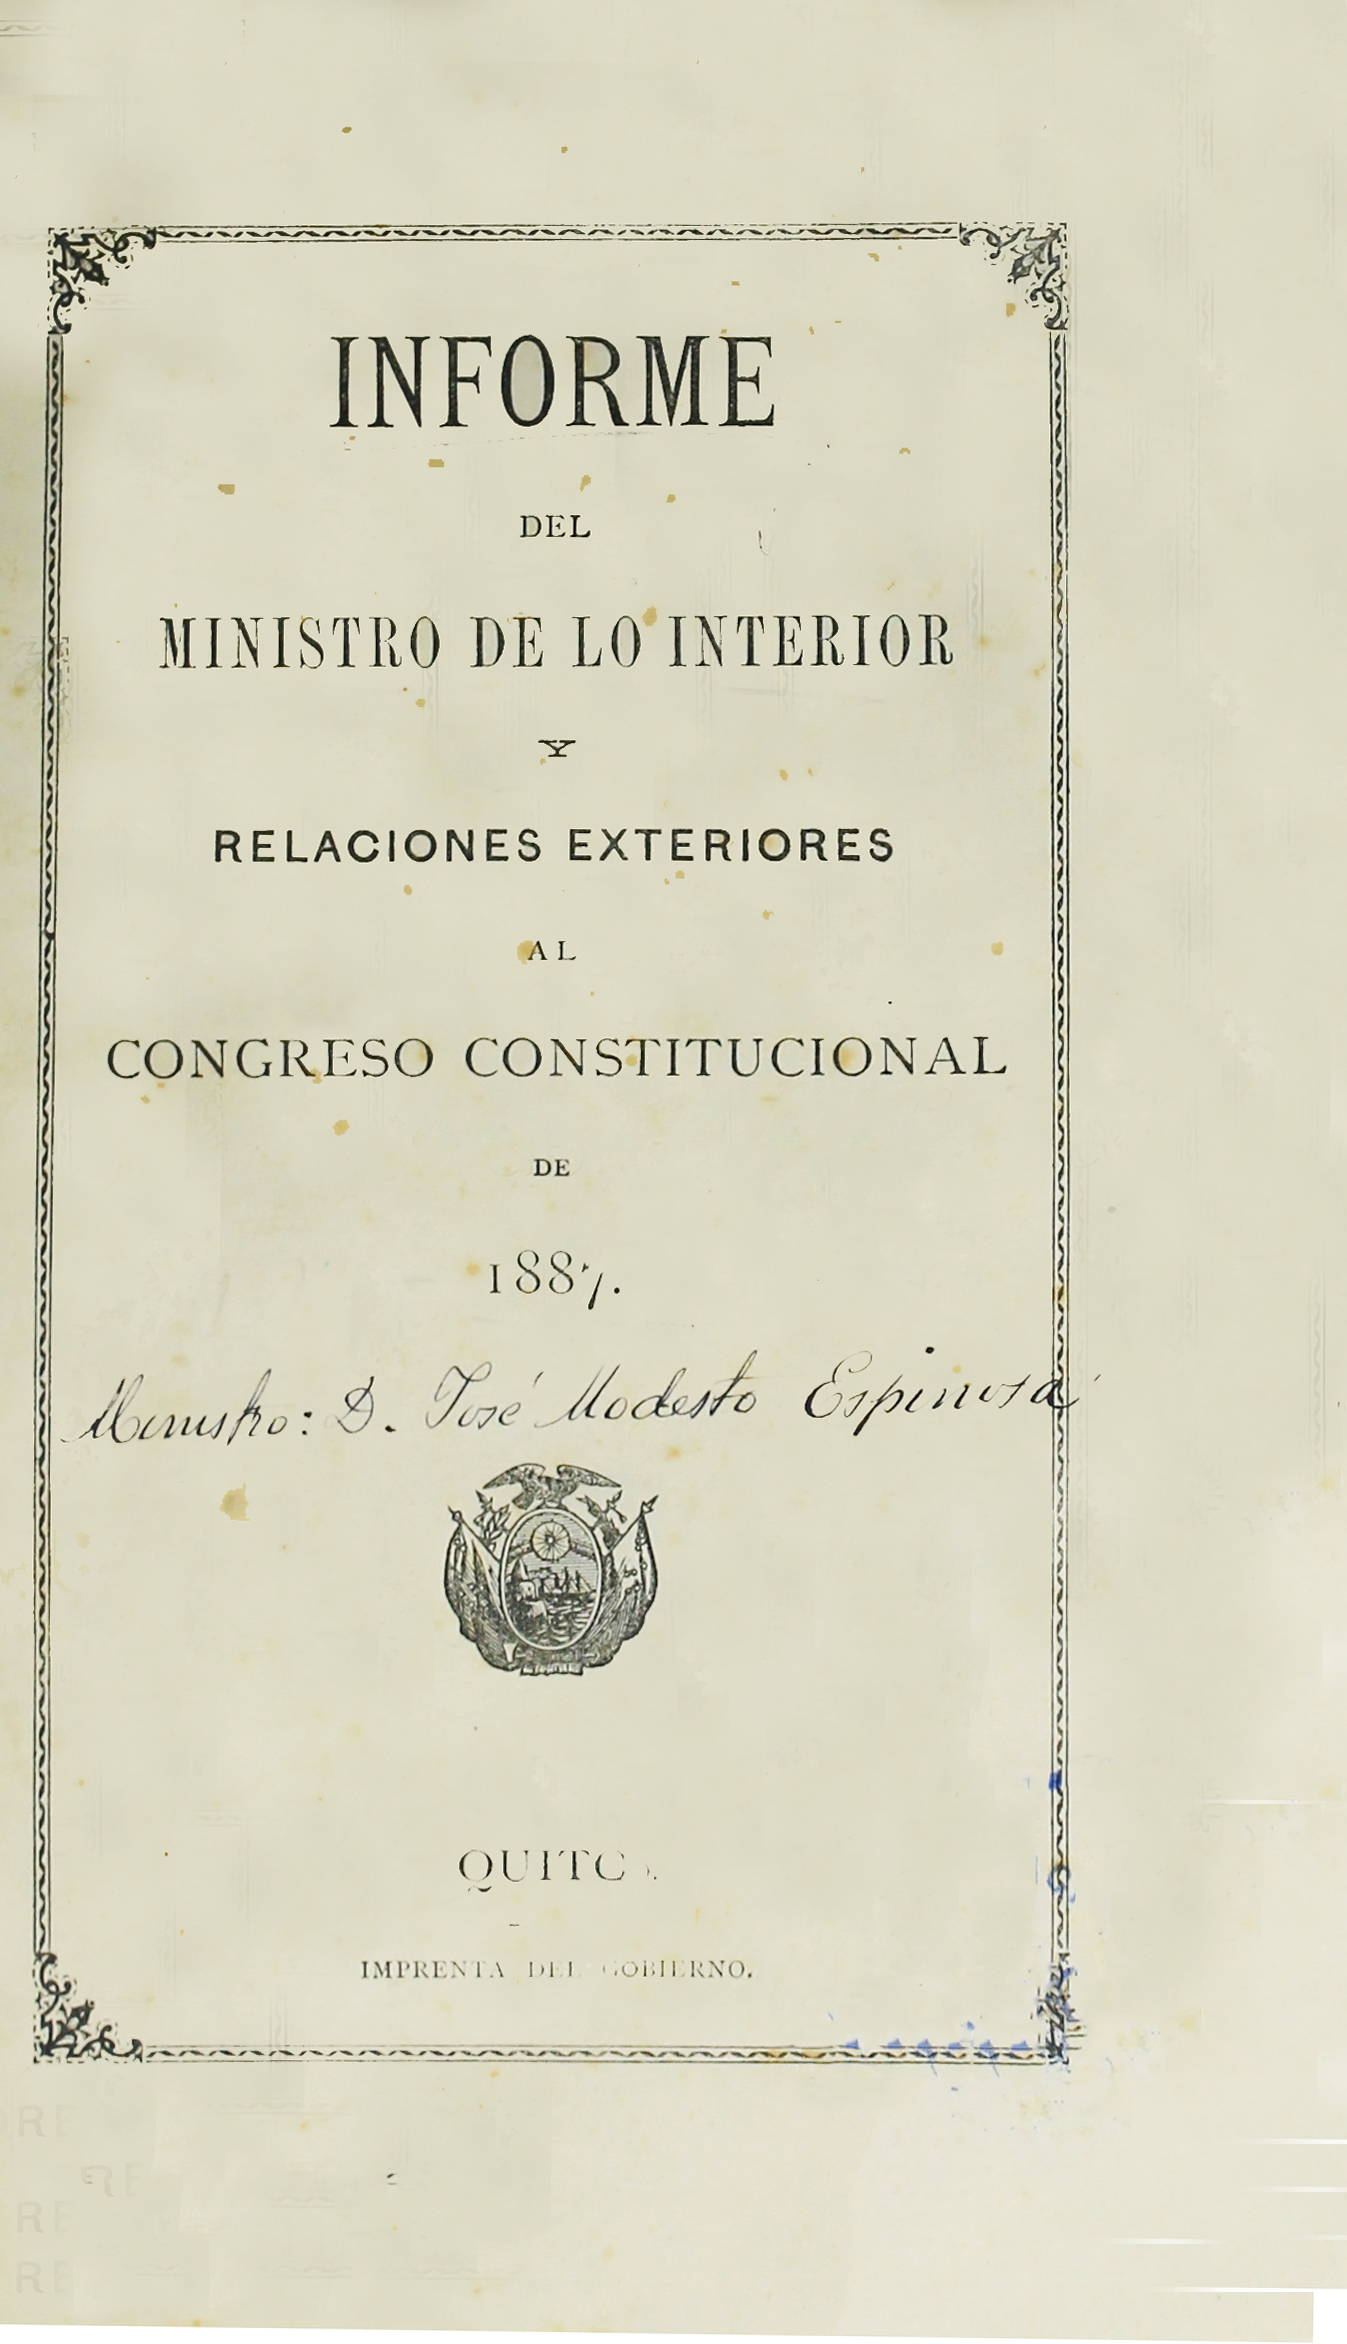 Informe del Ministro de lo Interior y Relaciones Exteriores al Congreso Constitucional de 1887